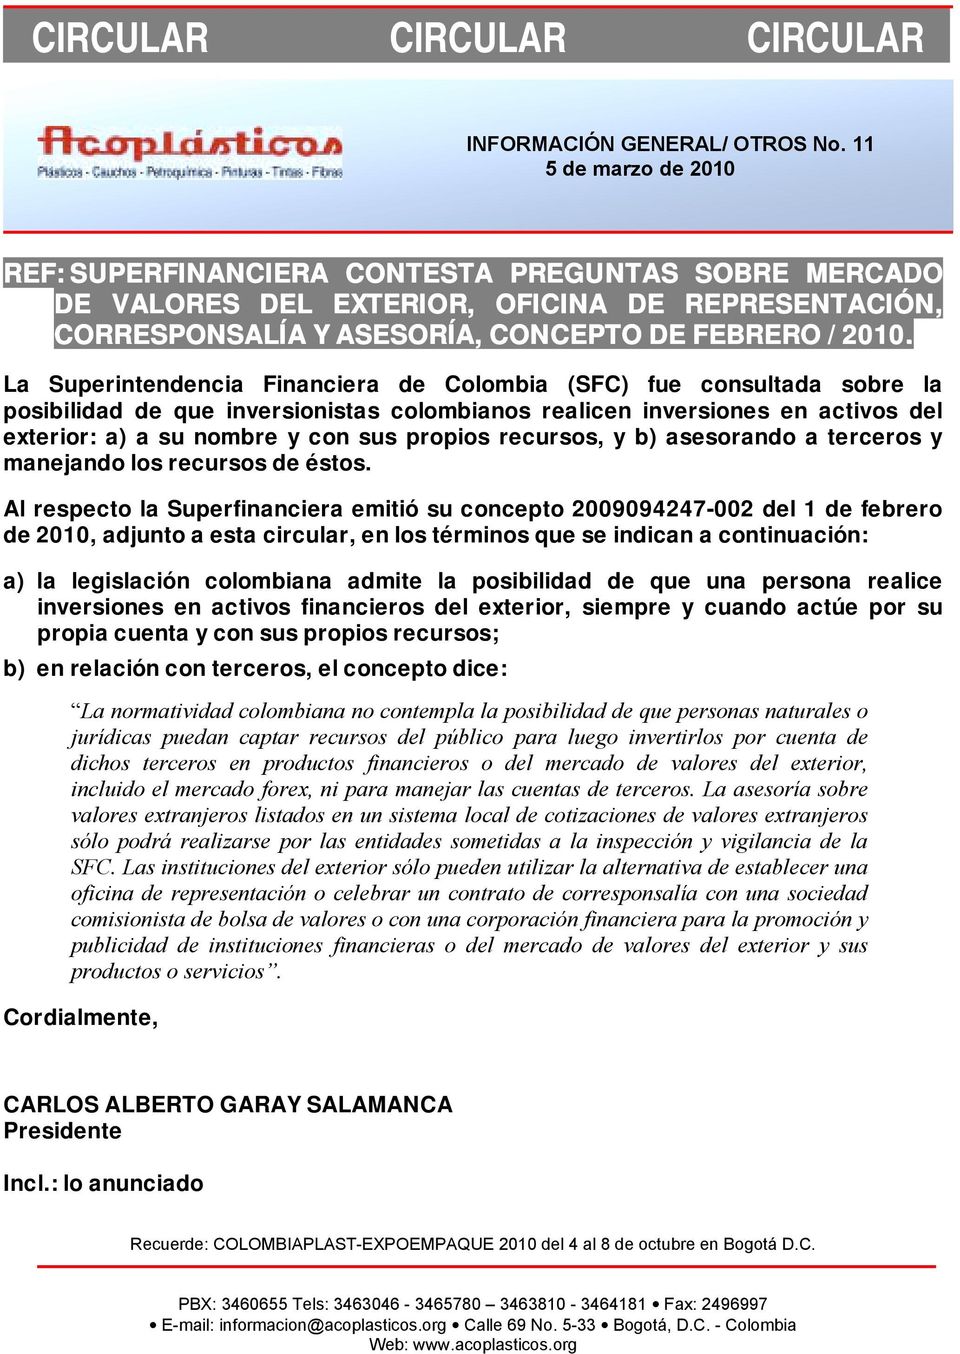 La Superintendencia Financiera de Colombia (SFC) fue consultada sobre la posibilidad de que inversionistas colombianos realicen inversiones en activos del exterior: a) a su nombre y con sus propios